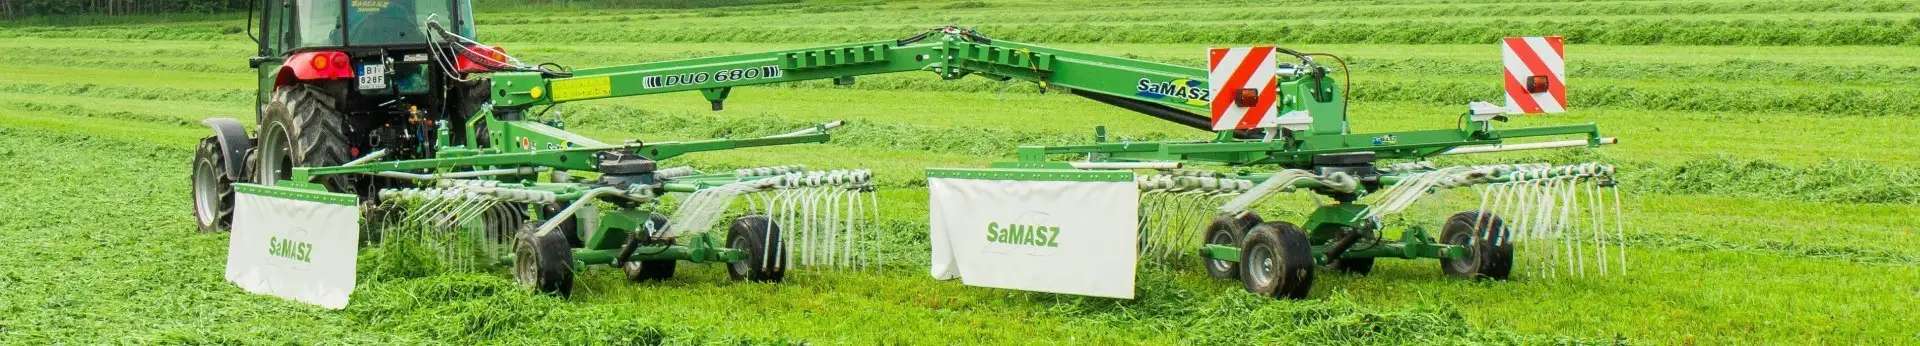 Zielona zgrabiarka zaczepiana 2-gwiazdowa DUO 680 firmy Samasz zaczepiona do czerwonego ciągnika zgrabia trawę na łące Korbanek.pl